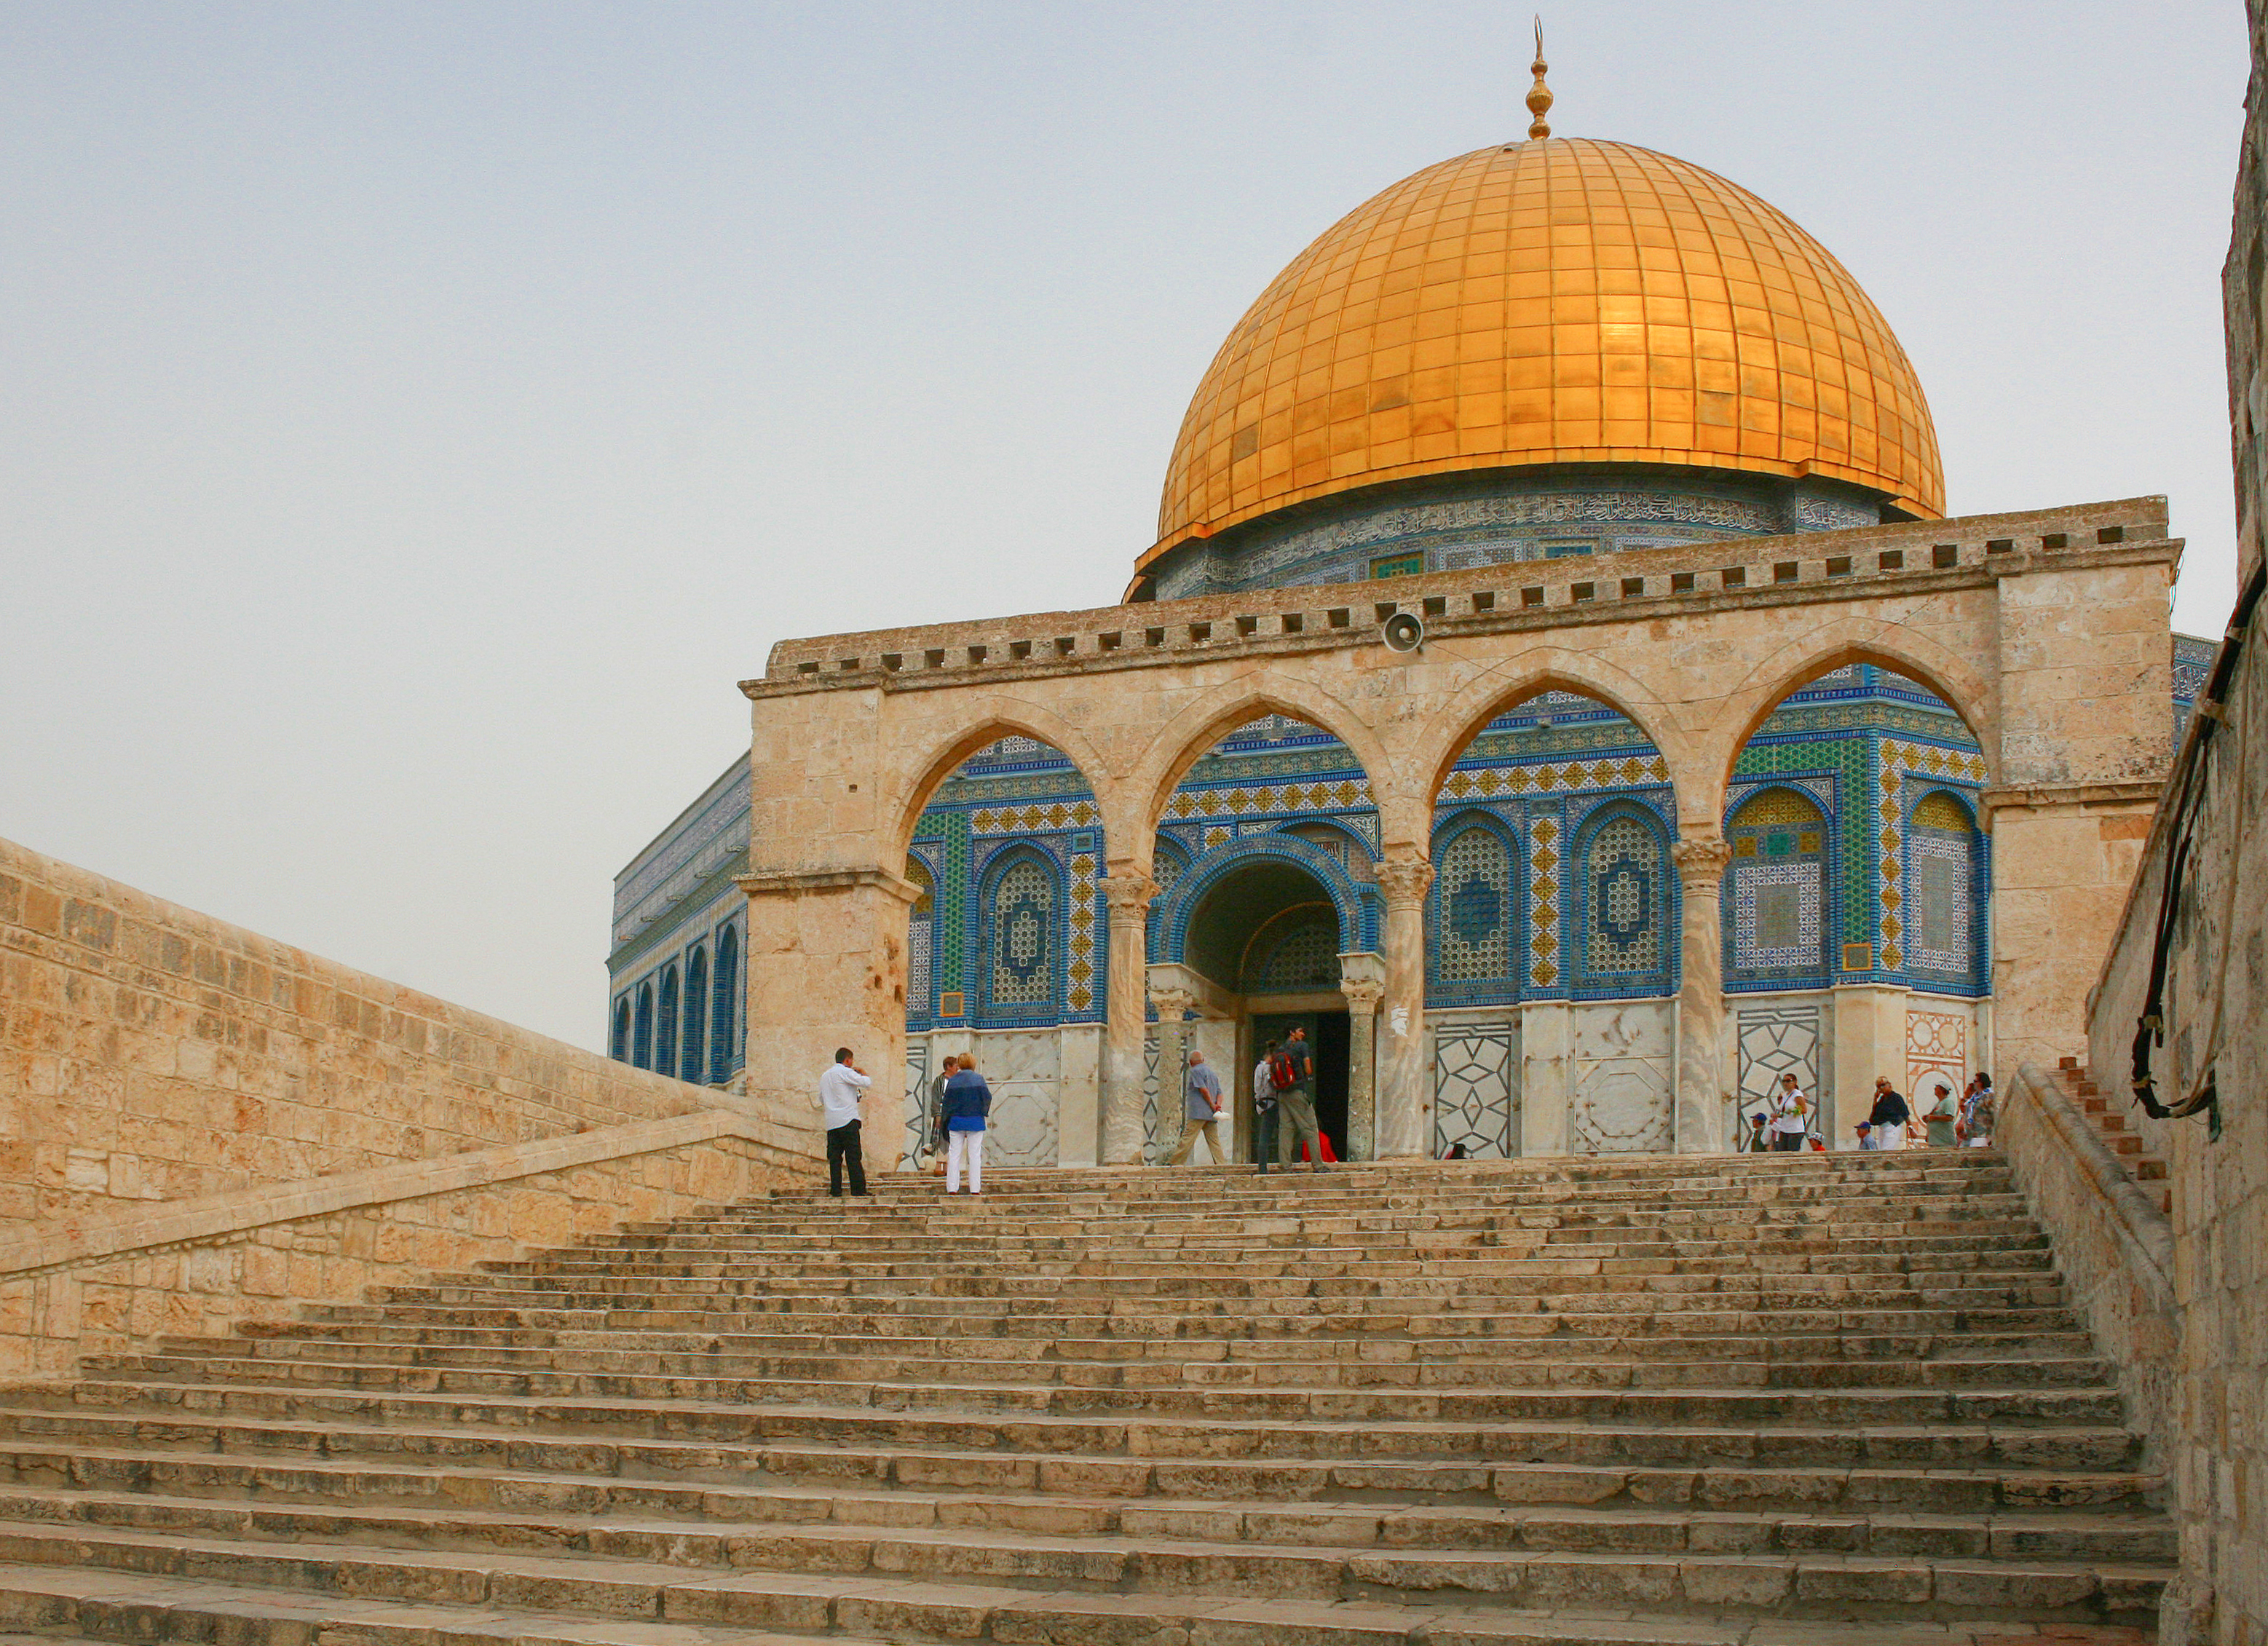 Al-mawazin next to the Dome of the Rock, Jerusalem8